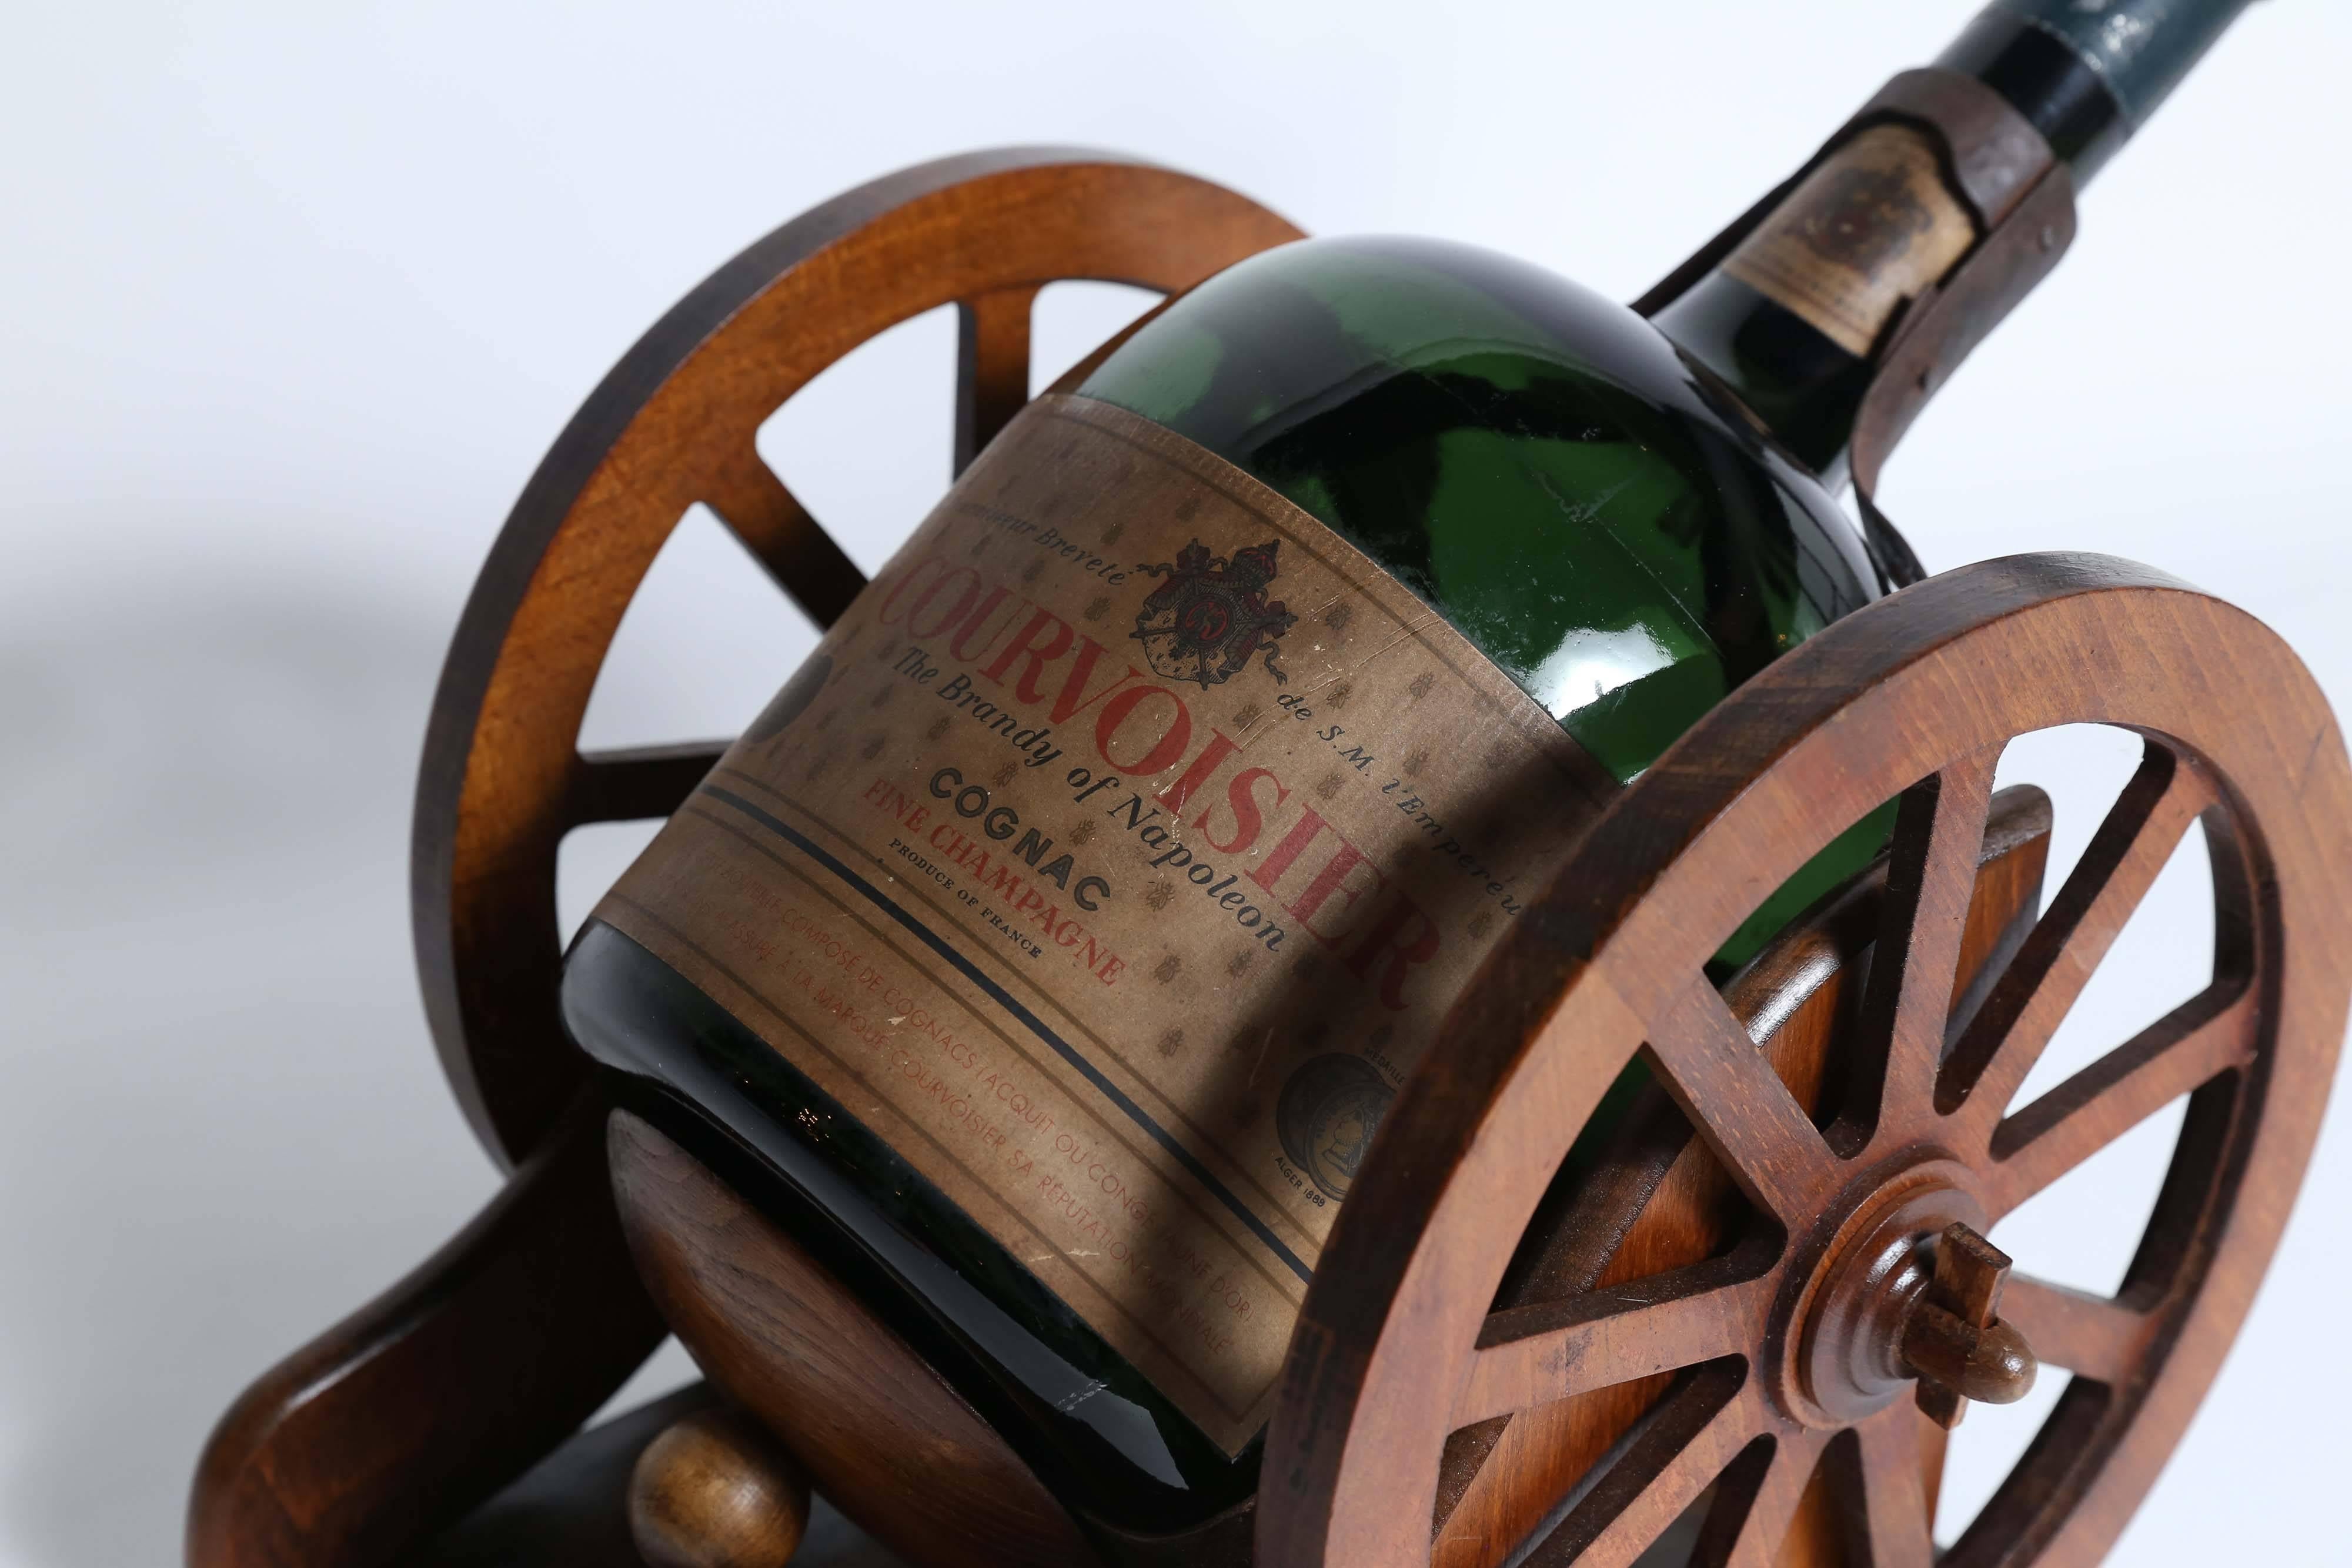 old bottle of courvoisier cognac